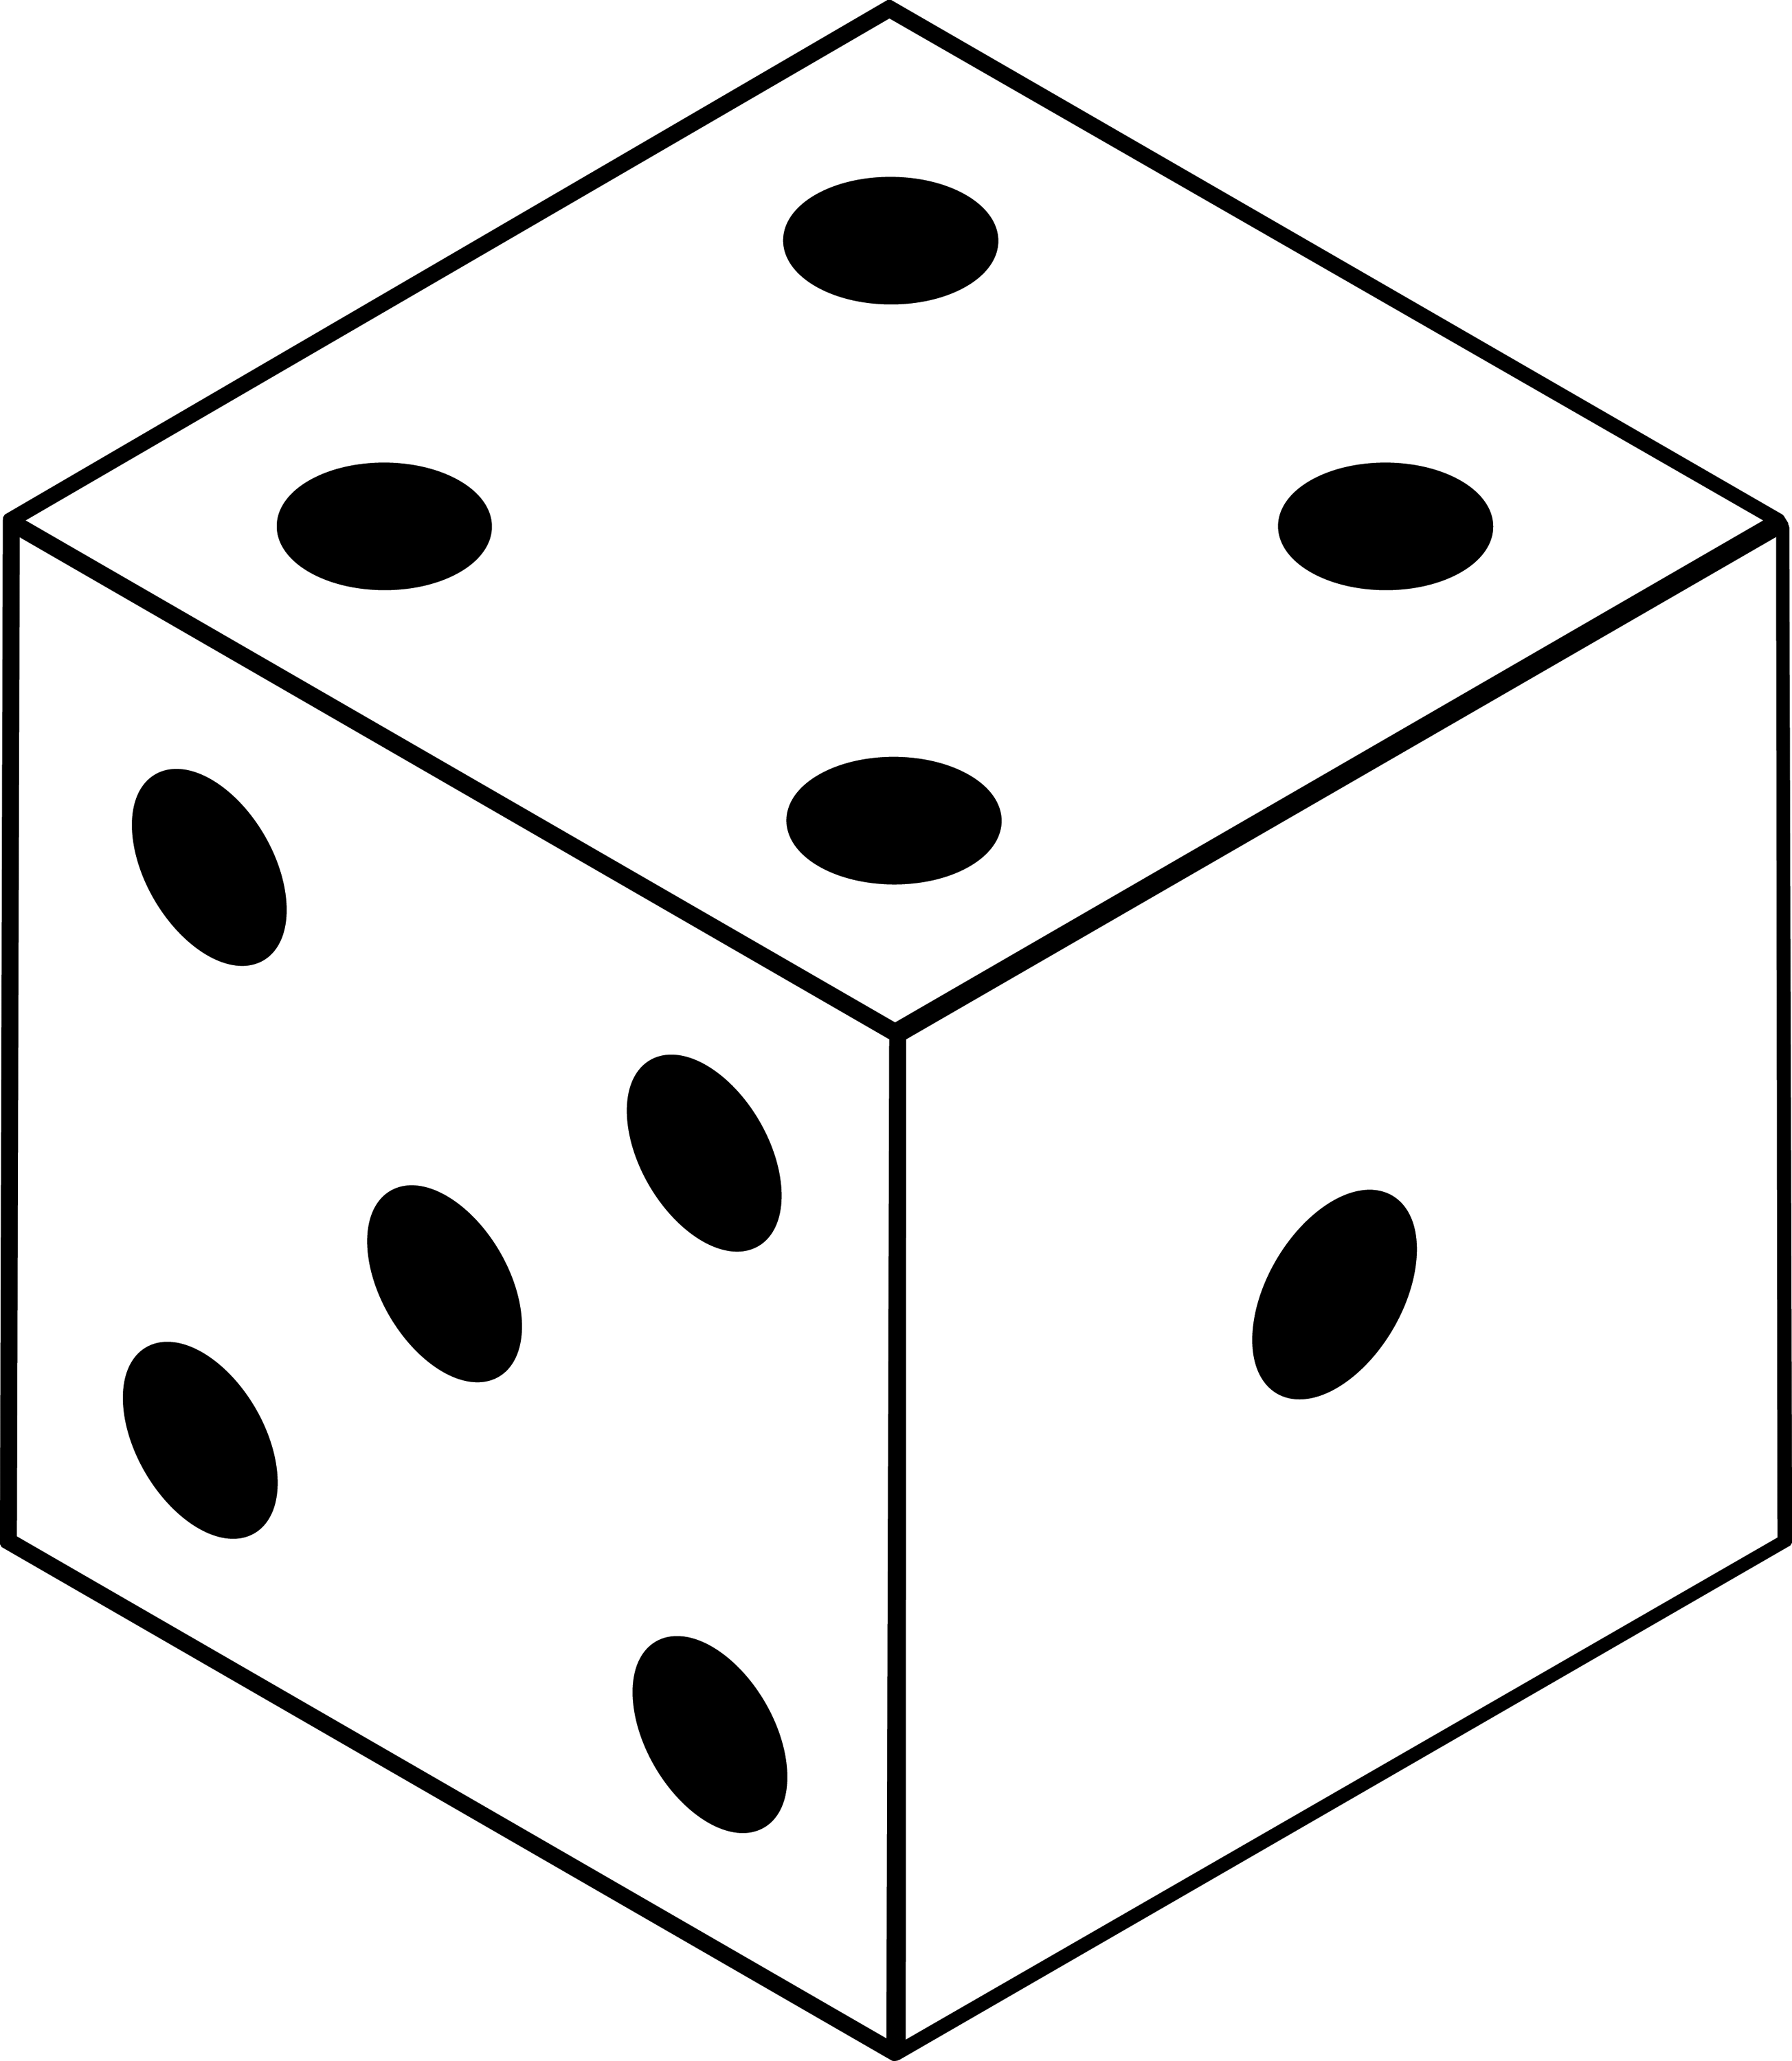 Сколько точек на кубике. Игральный кубик со всех сторон. Игровые кубики с точками. Игровой кубик со всех сторон. Мгралтный кубик со всехсторон.